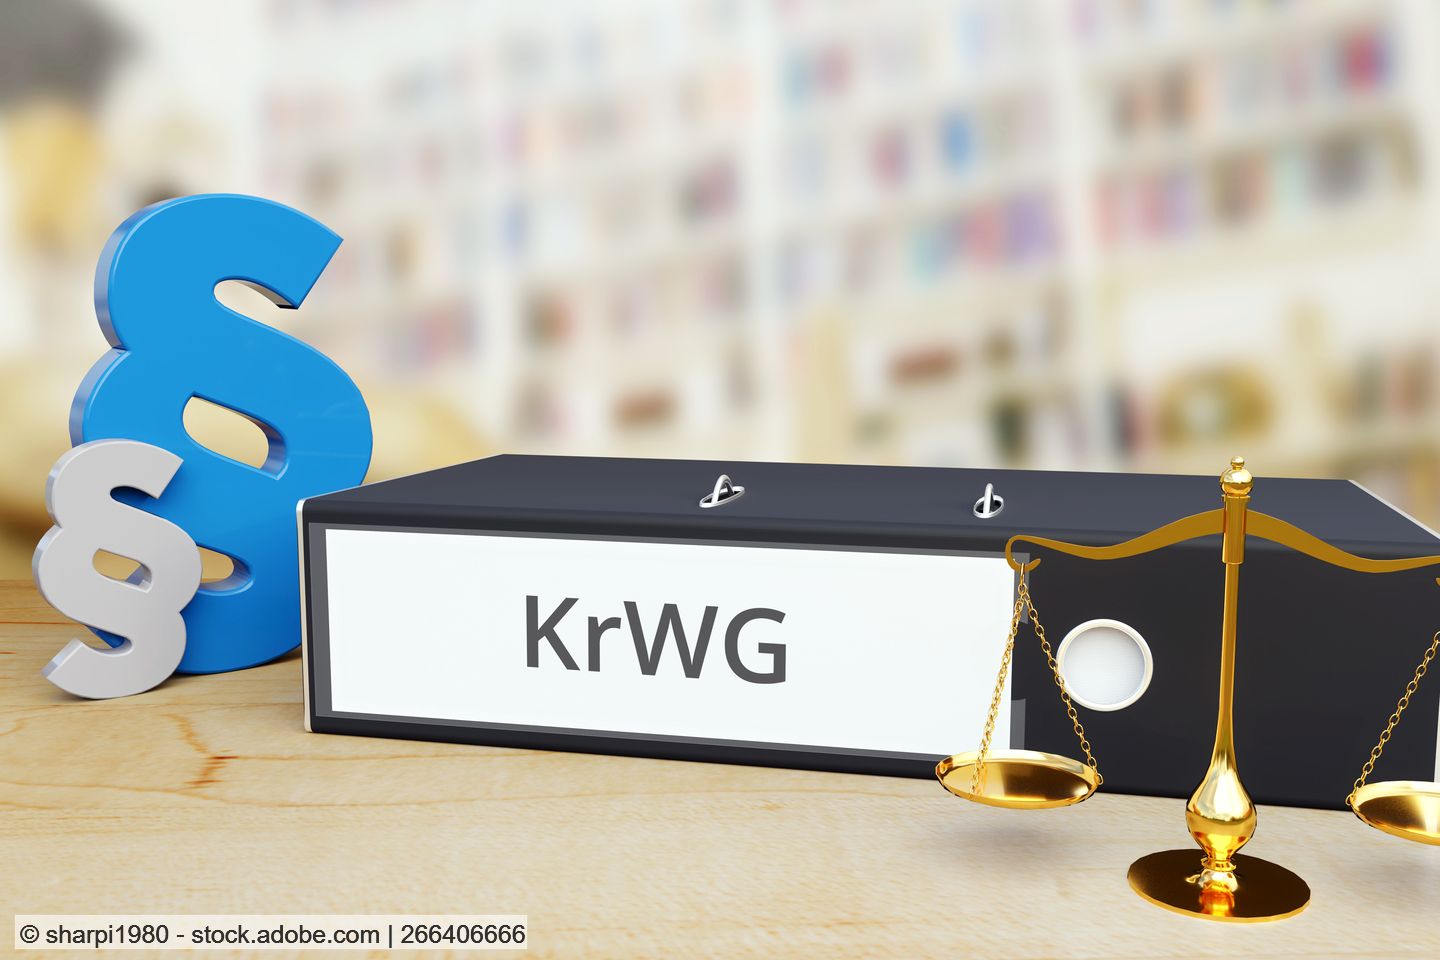 Klagerecht für örE und Vertreiberrücknahme bei KrWG-Novelle weiter umstritten 